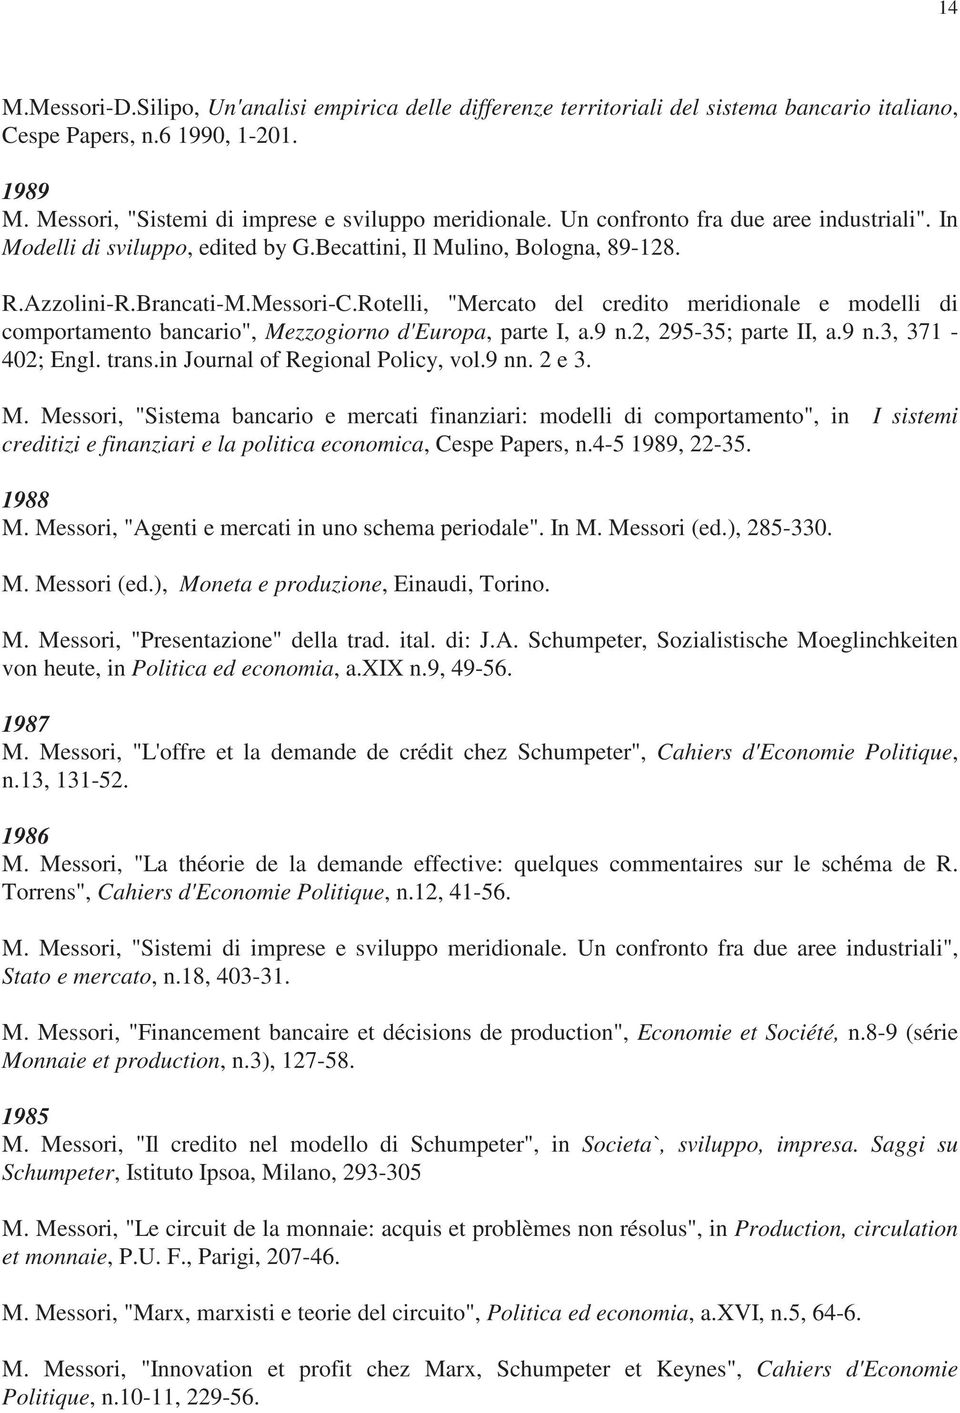 Rotelli, "Mercato del credito meridionale e modelli di comportamento bancario", Mezzogiorno d'europa, parte I, a.9 n.2, 295-35; parte II, a.9 n.3, 371-402; Engl. trans.